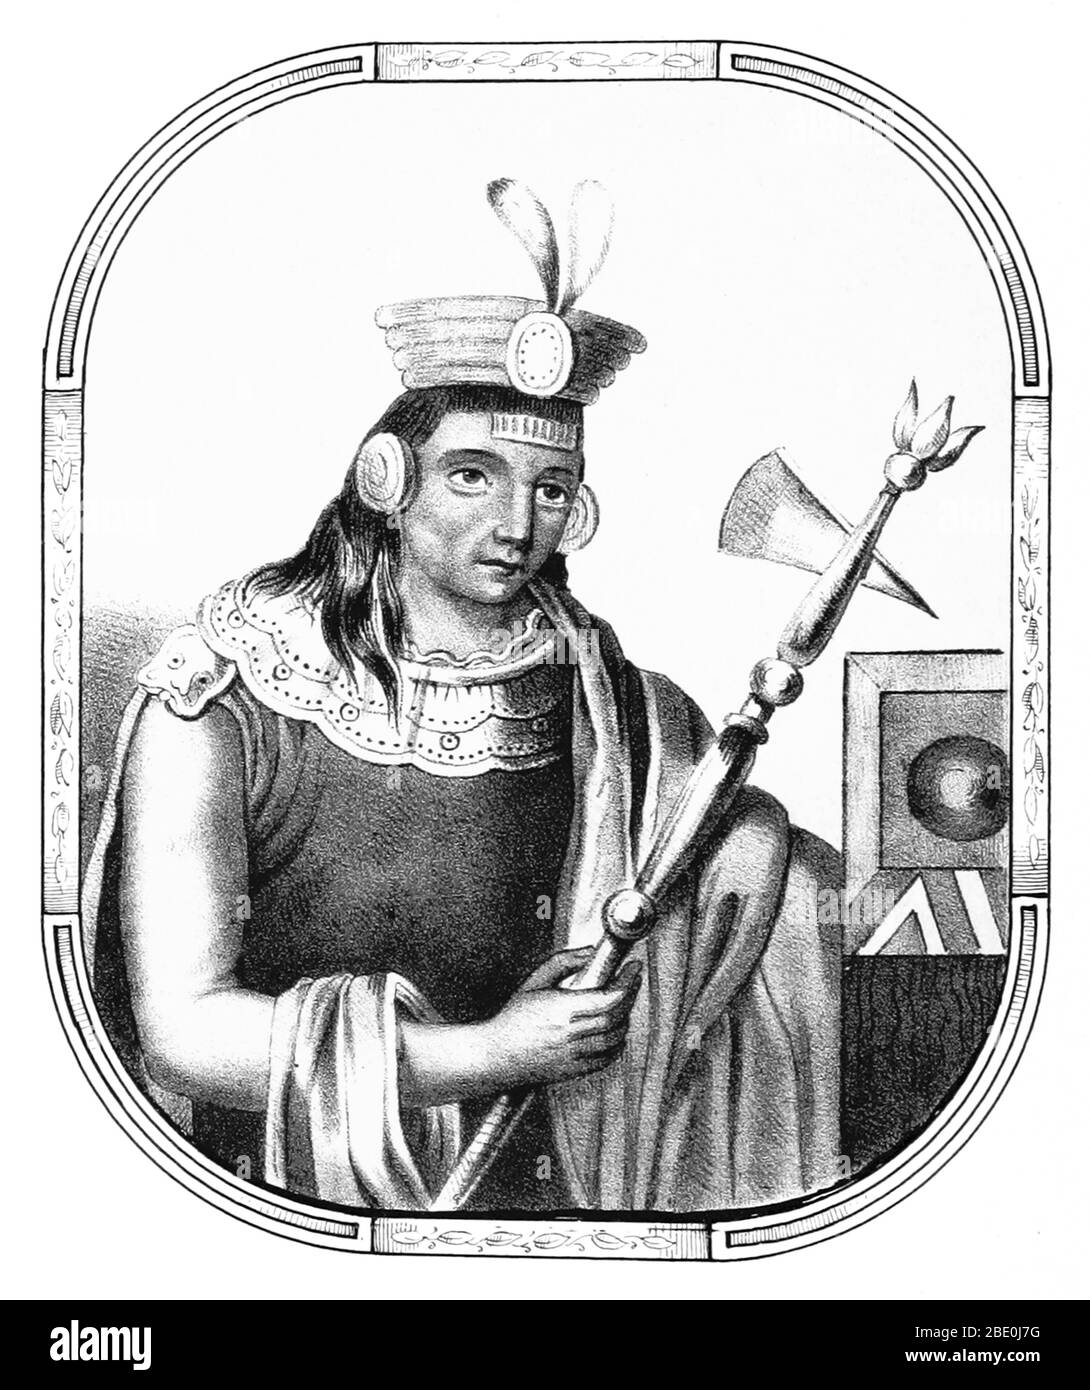 Manco Cápac était, selon certains historiens, le premier gouverneur et fondateur de la civilisation Inca à Cusco, peut-être au début du XIIIe siècle. Il est aussi une figure principale de la mythologie inca, étant le protagoniste des deux légendes les plus connues sur l'origine de l'Inca, les deux reliant à la fondation de Cusco. Sa femme principale était Mama Uqllu, également mère de son fils et successeur Sinchi Ruq'a. Même si son chiffre est mentionné dans plusieurs chroniques, son existence réelle reste incertaine. Image tirée de la page 42 de 'Recuerdos de la Monarquia Peruana, ó bosquejo de la historia d Banque D'Images